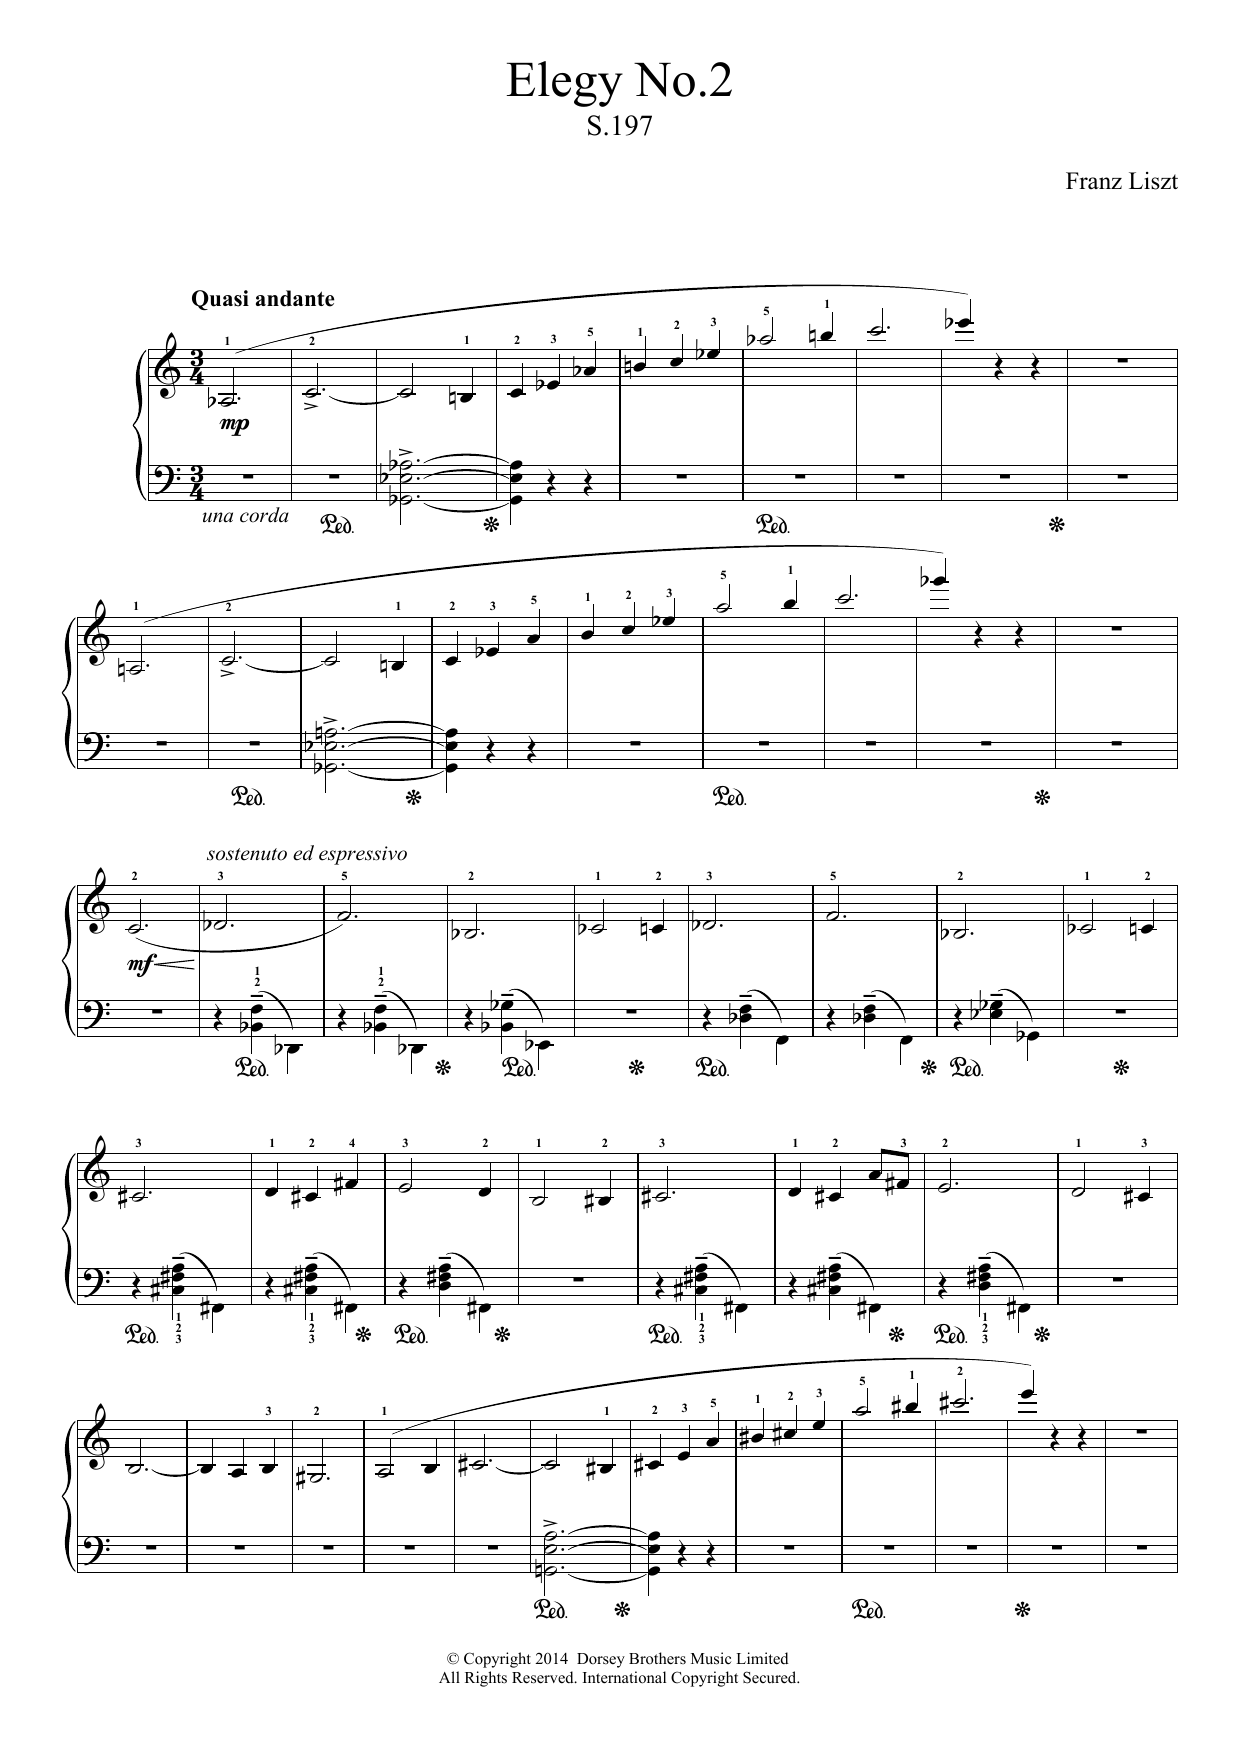 Download Franz Liszt Elegy No.2 Sheet Music